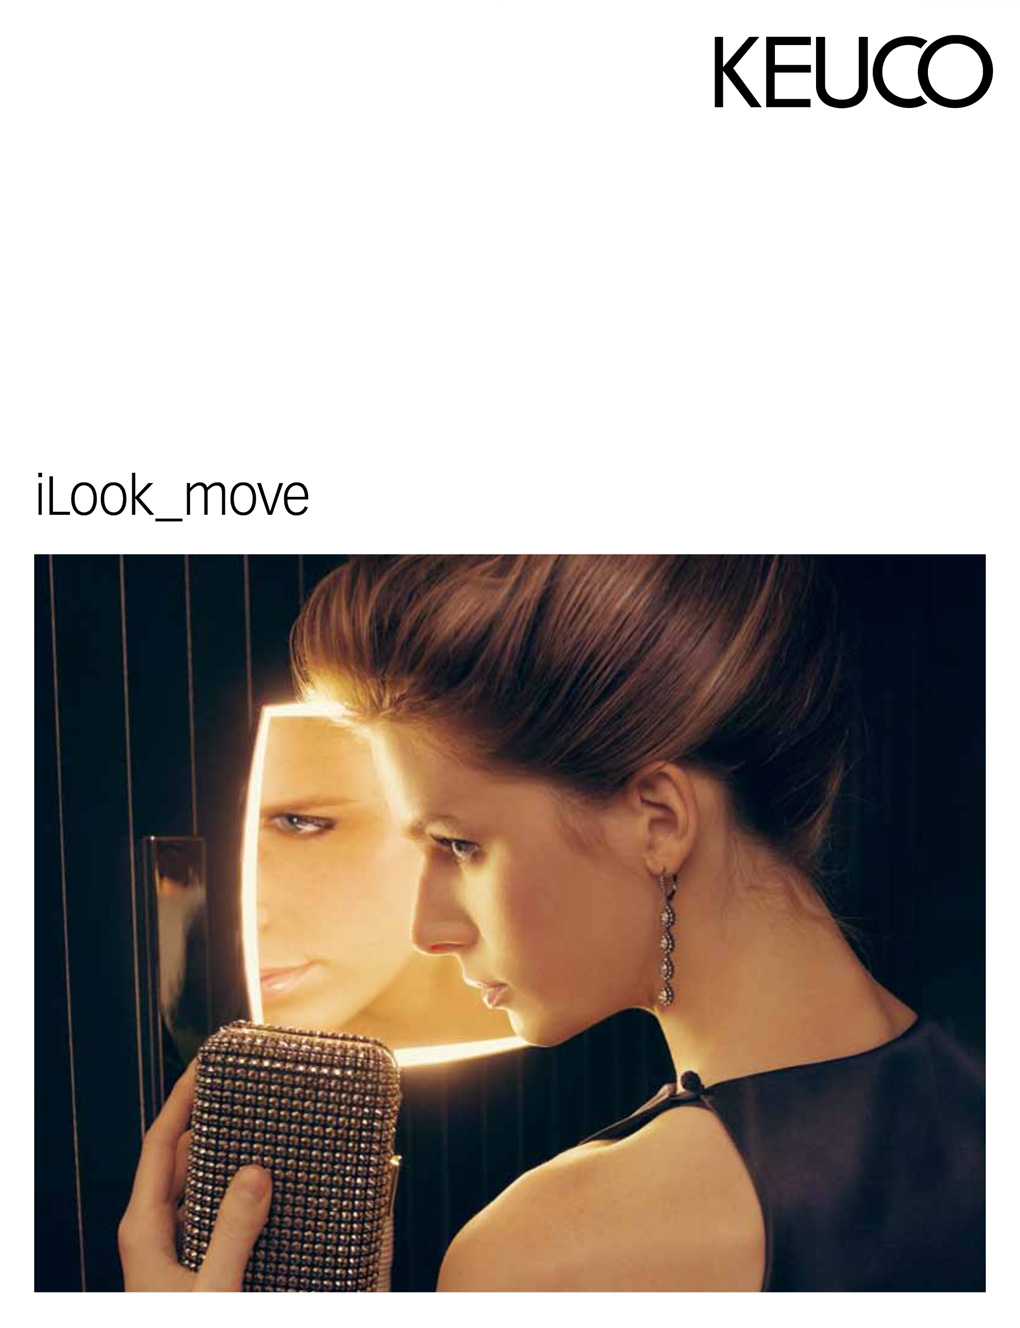 Espejo de vanidad Keuco iLook_move, iluminado, interruptor basculante,  cromado, 1 color de luz, 200x200 mm, 17613